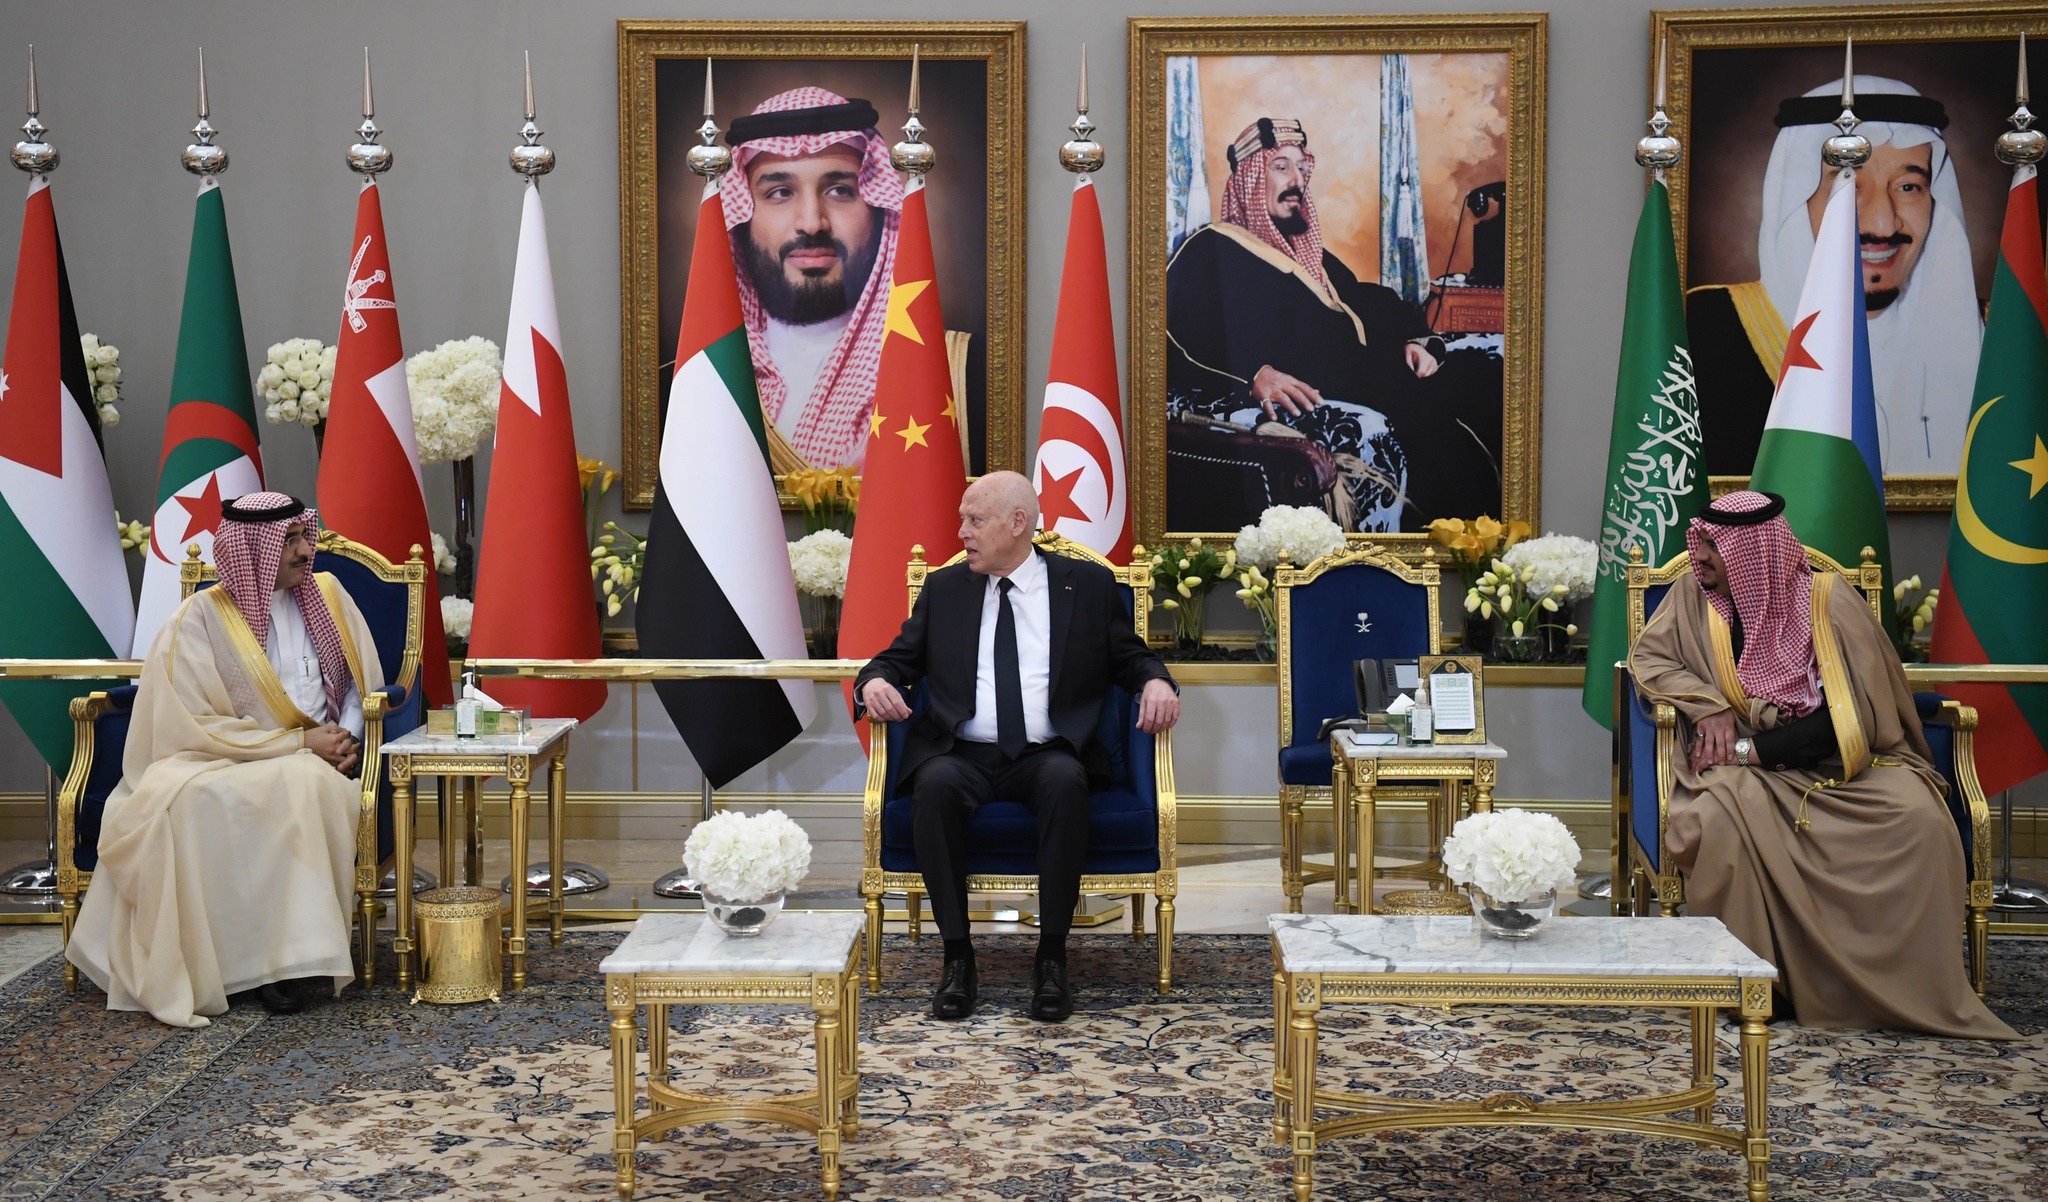 Le cauchemar pour Tunis : l’Arabie saoudite normalisera ses relations avec Israël avant la présidentielle américaine